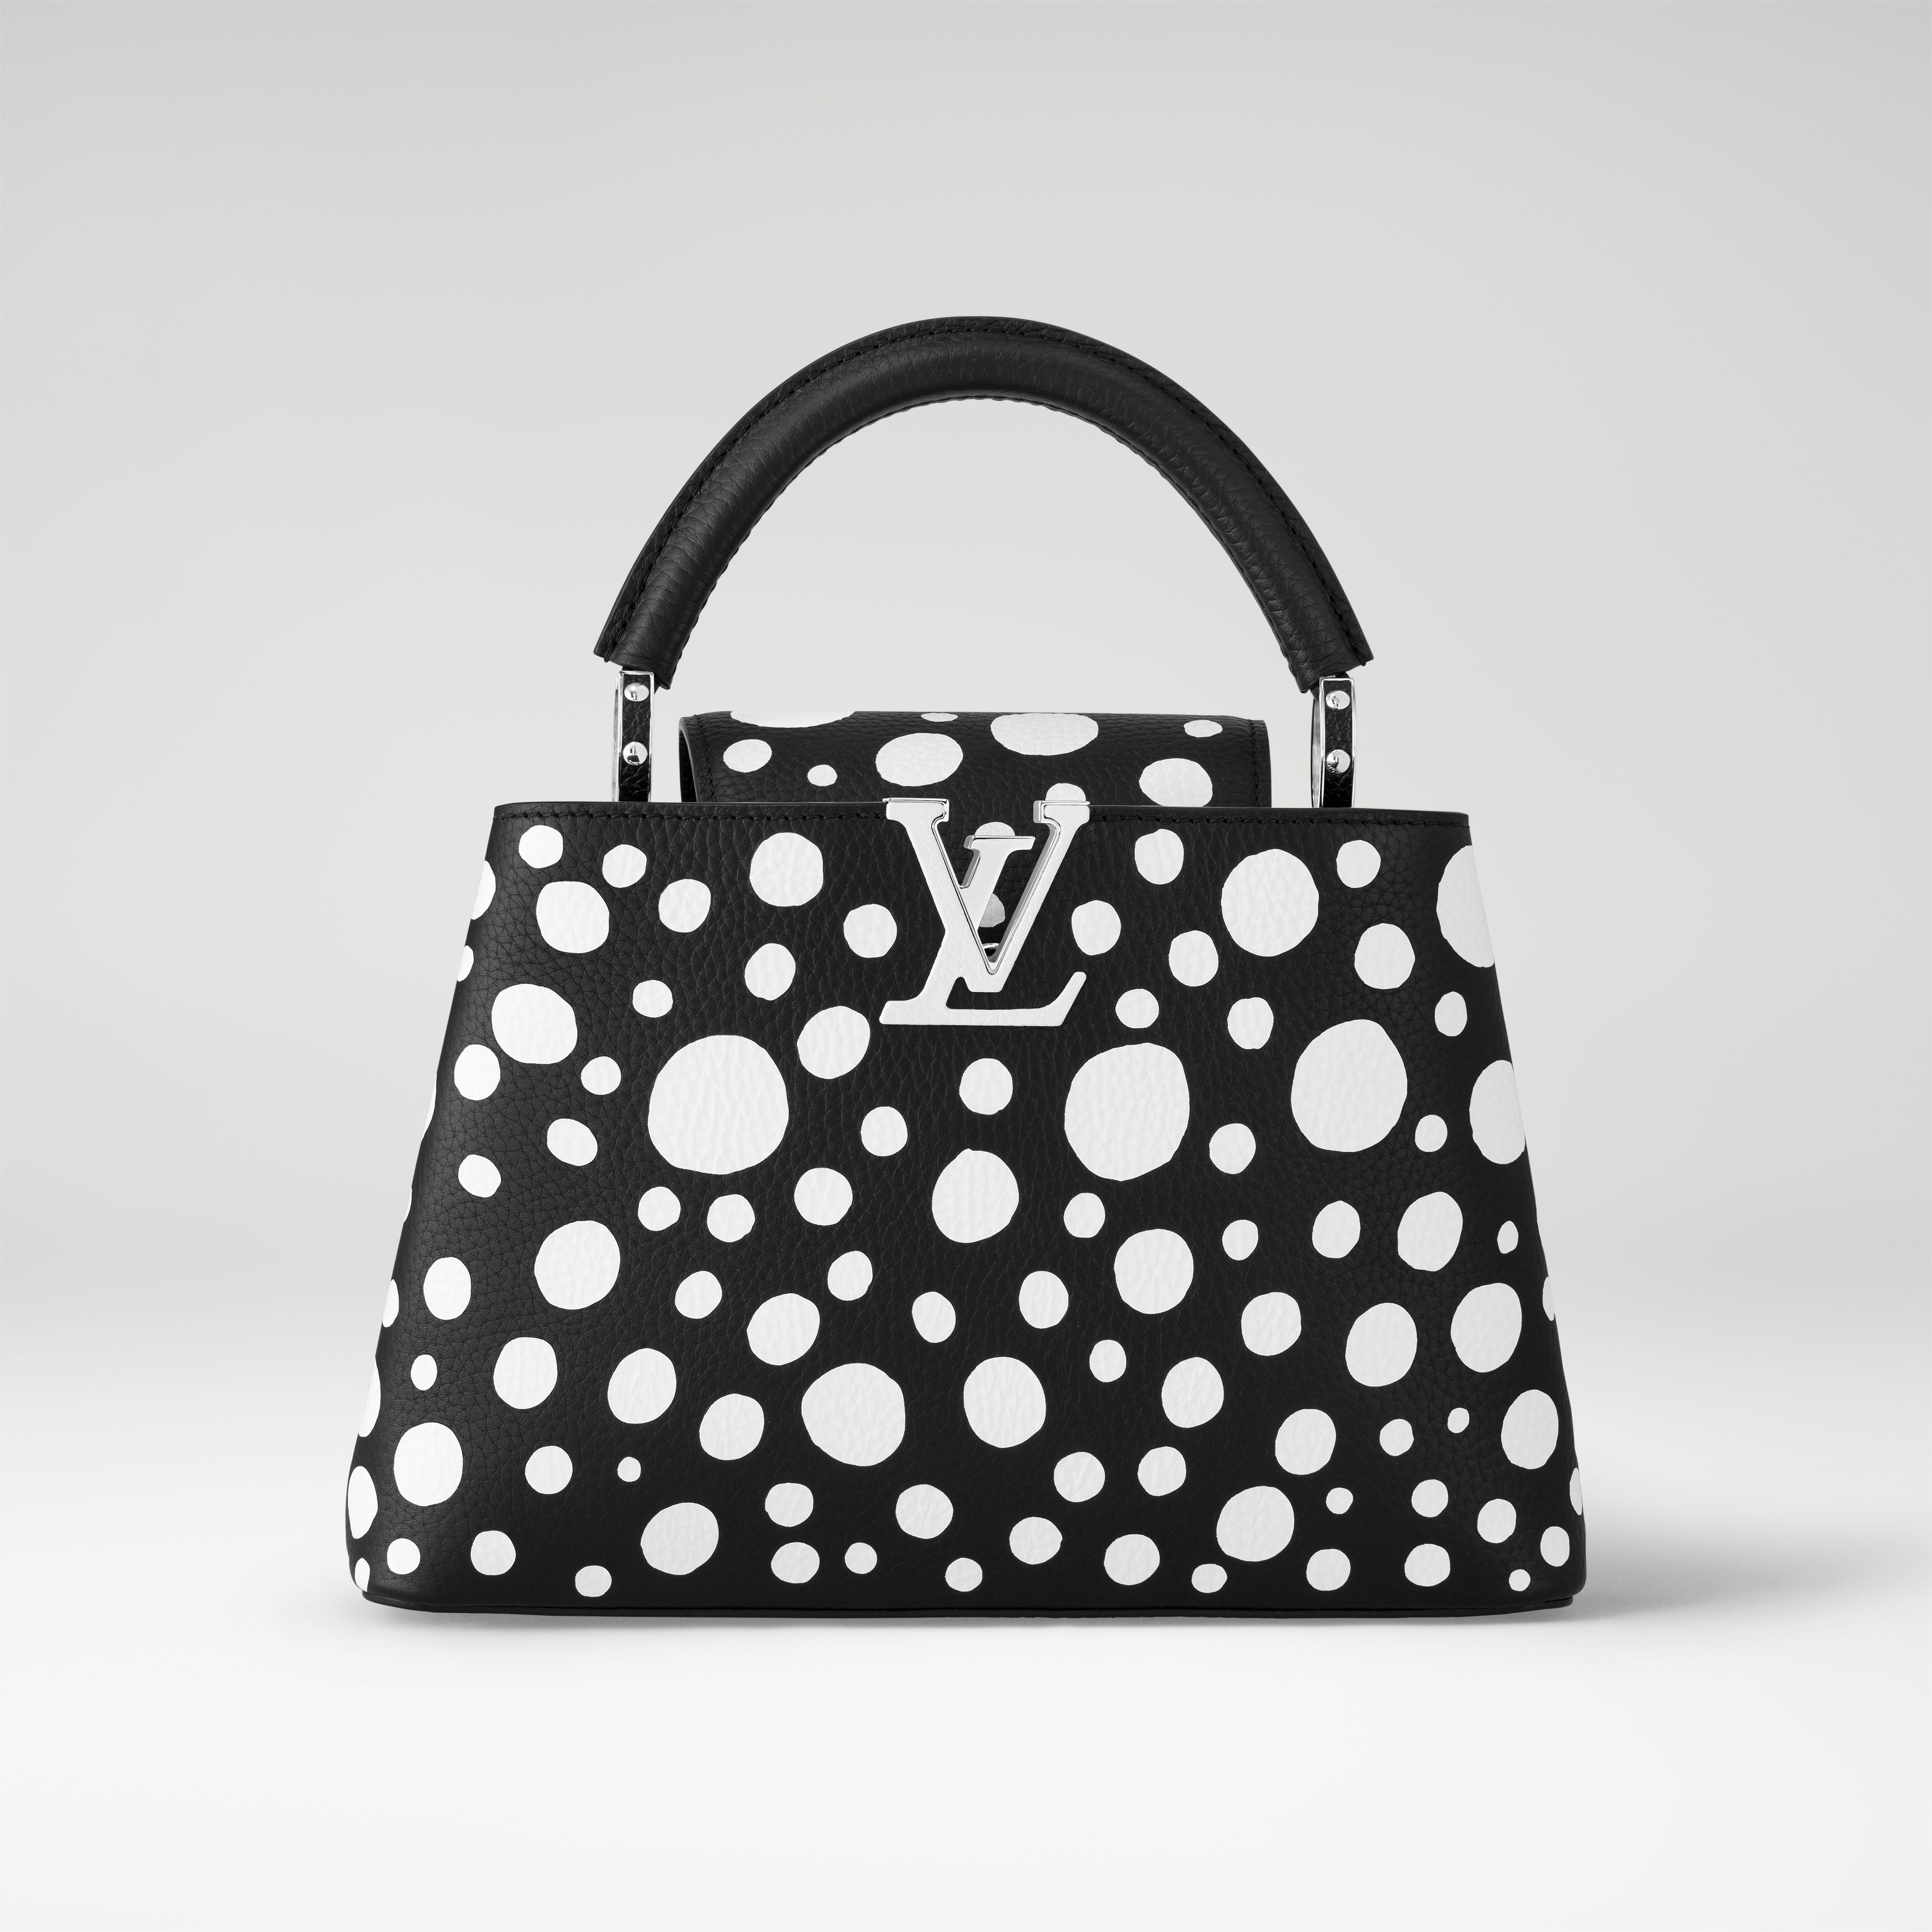 Tutto sulla capsule di borse Louis Vuitton x Yayoi Kusama